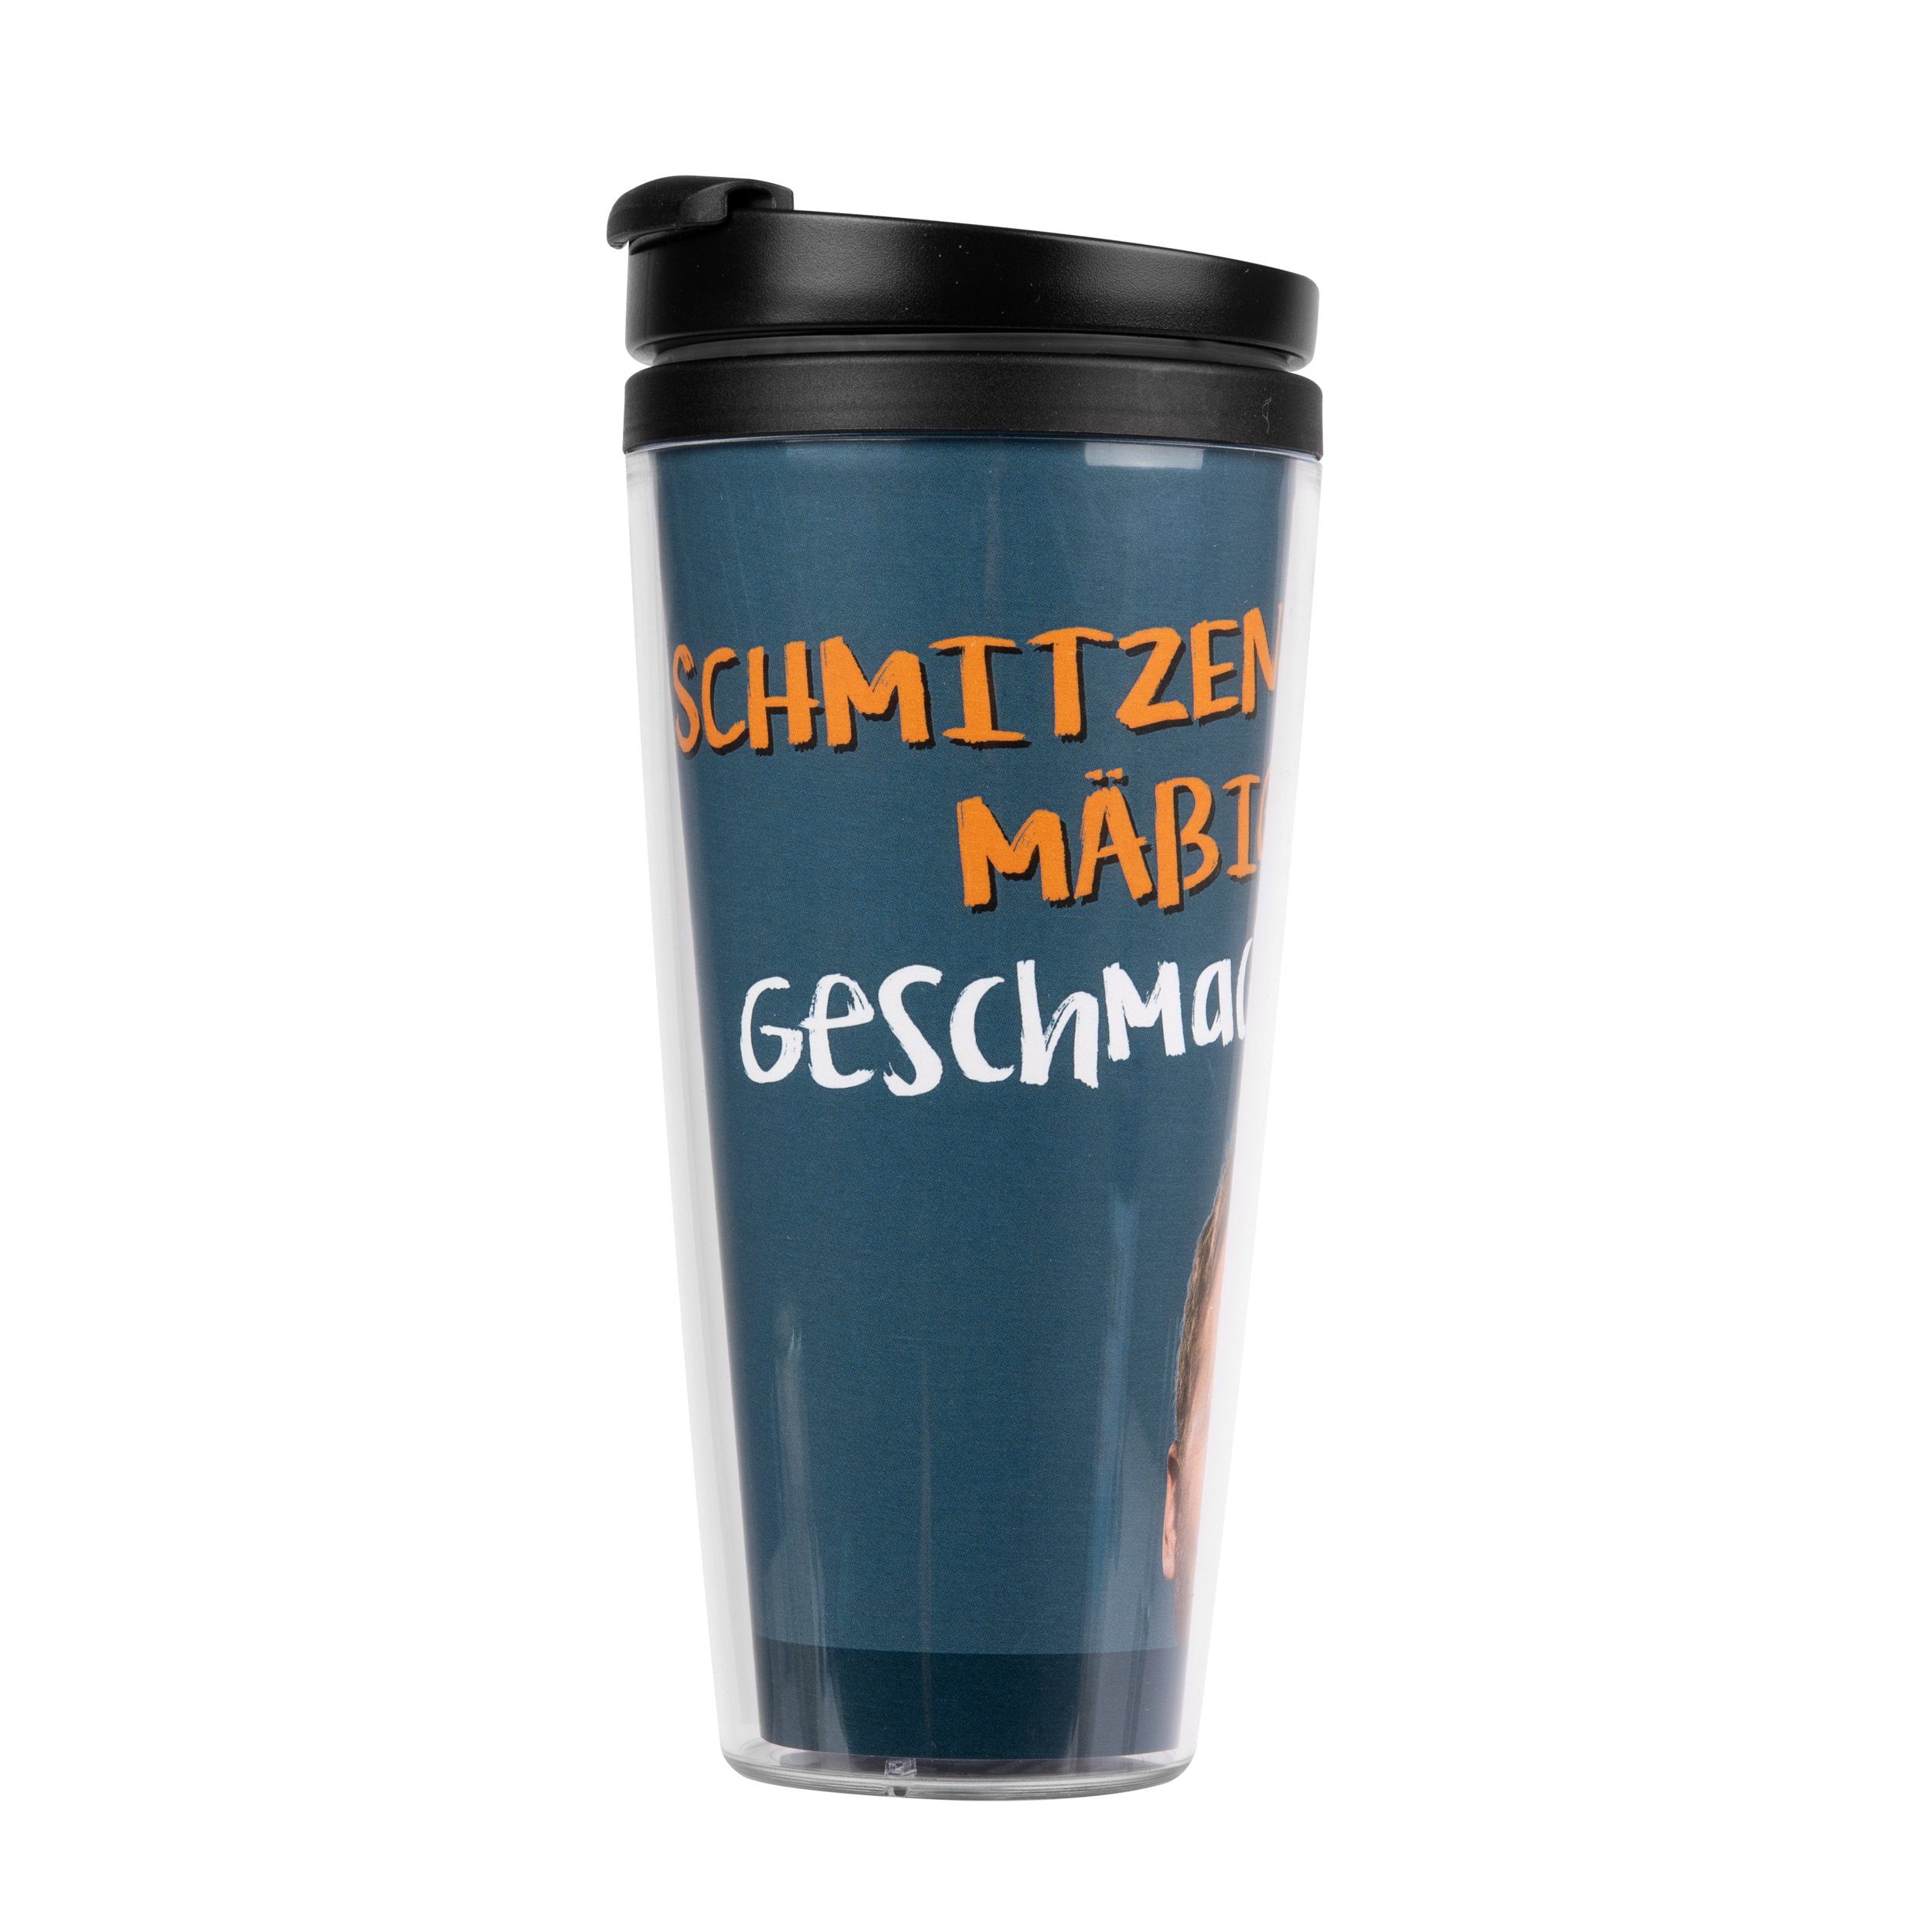 - Becher Ralf Schmitzenmäßiger Coffee-to-go-Becher Coffee-To-Go United Labels® Kunststoff (PP/PVC) ml, Schmitz 250 Geschmack!